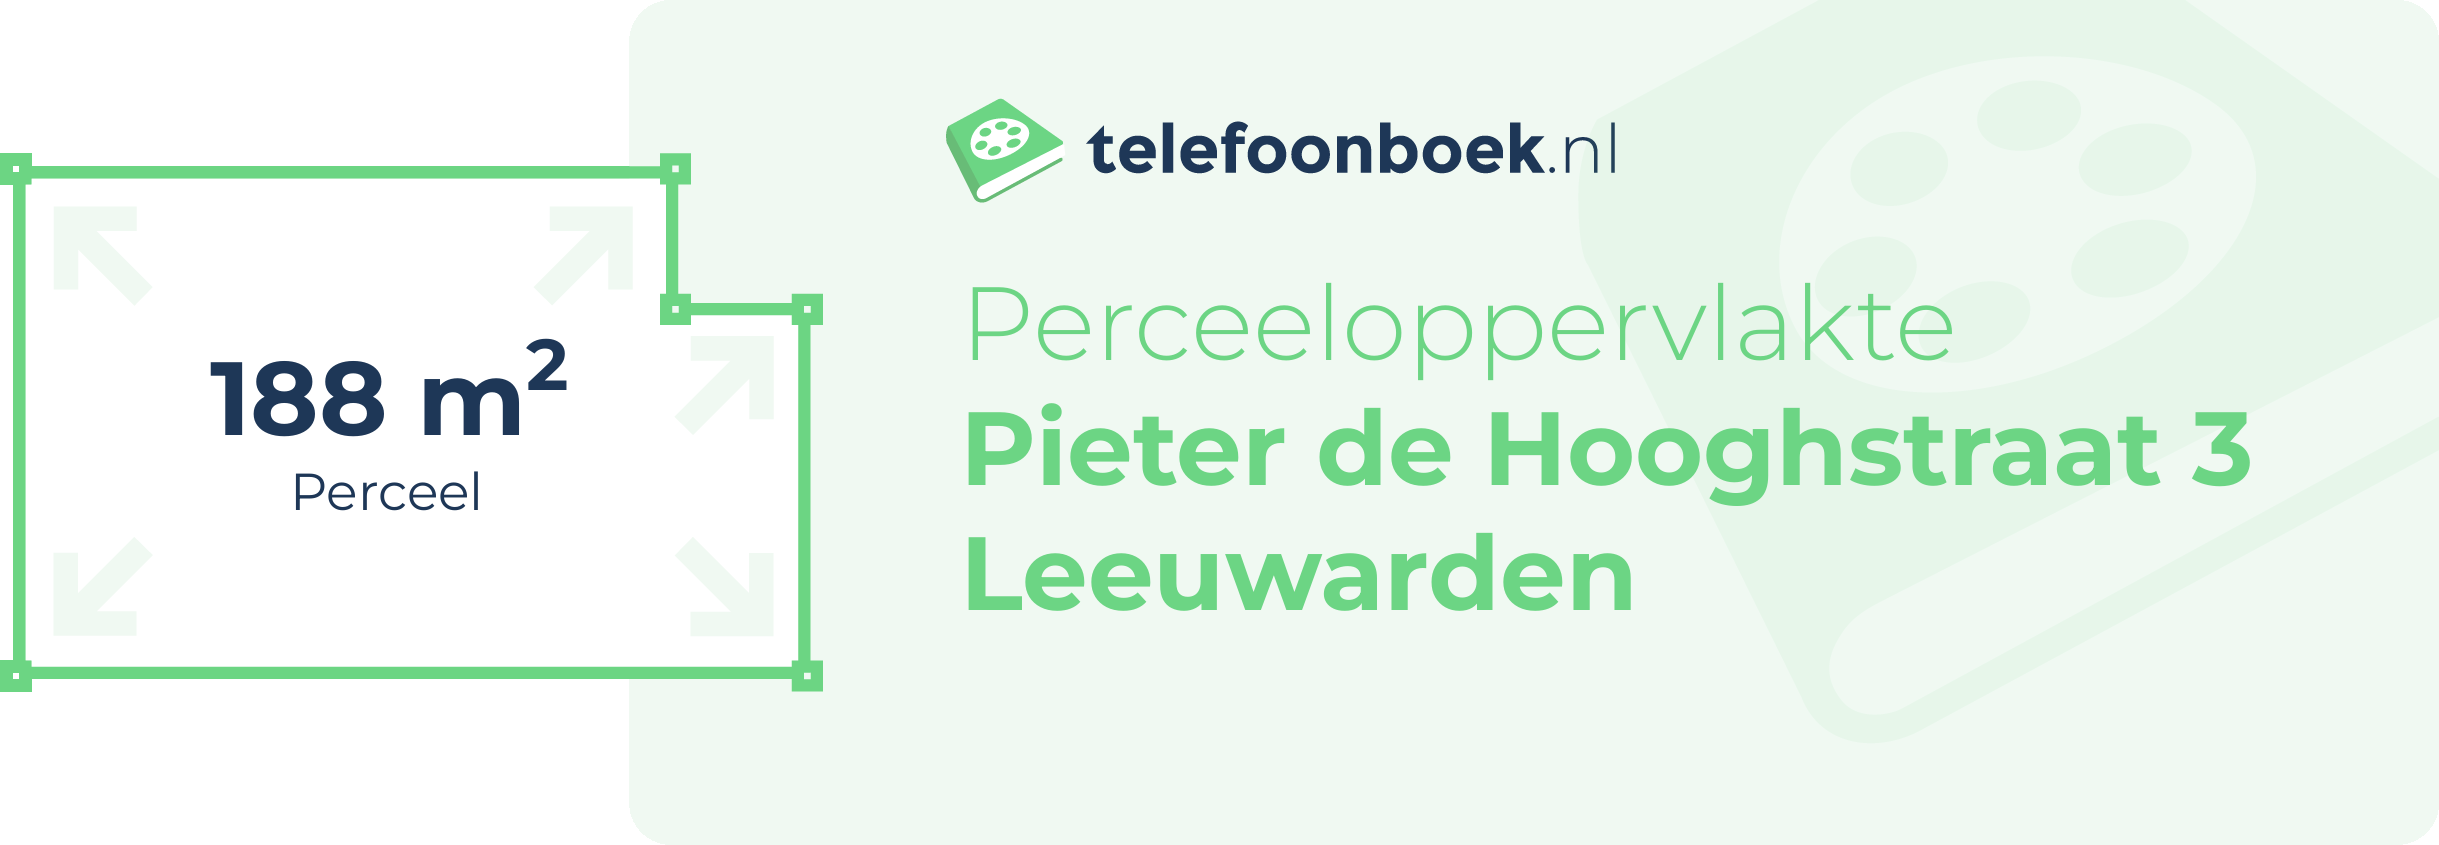 Perceeloppervlakte Pieter De Hooghstraat 3 Leeuwarden